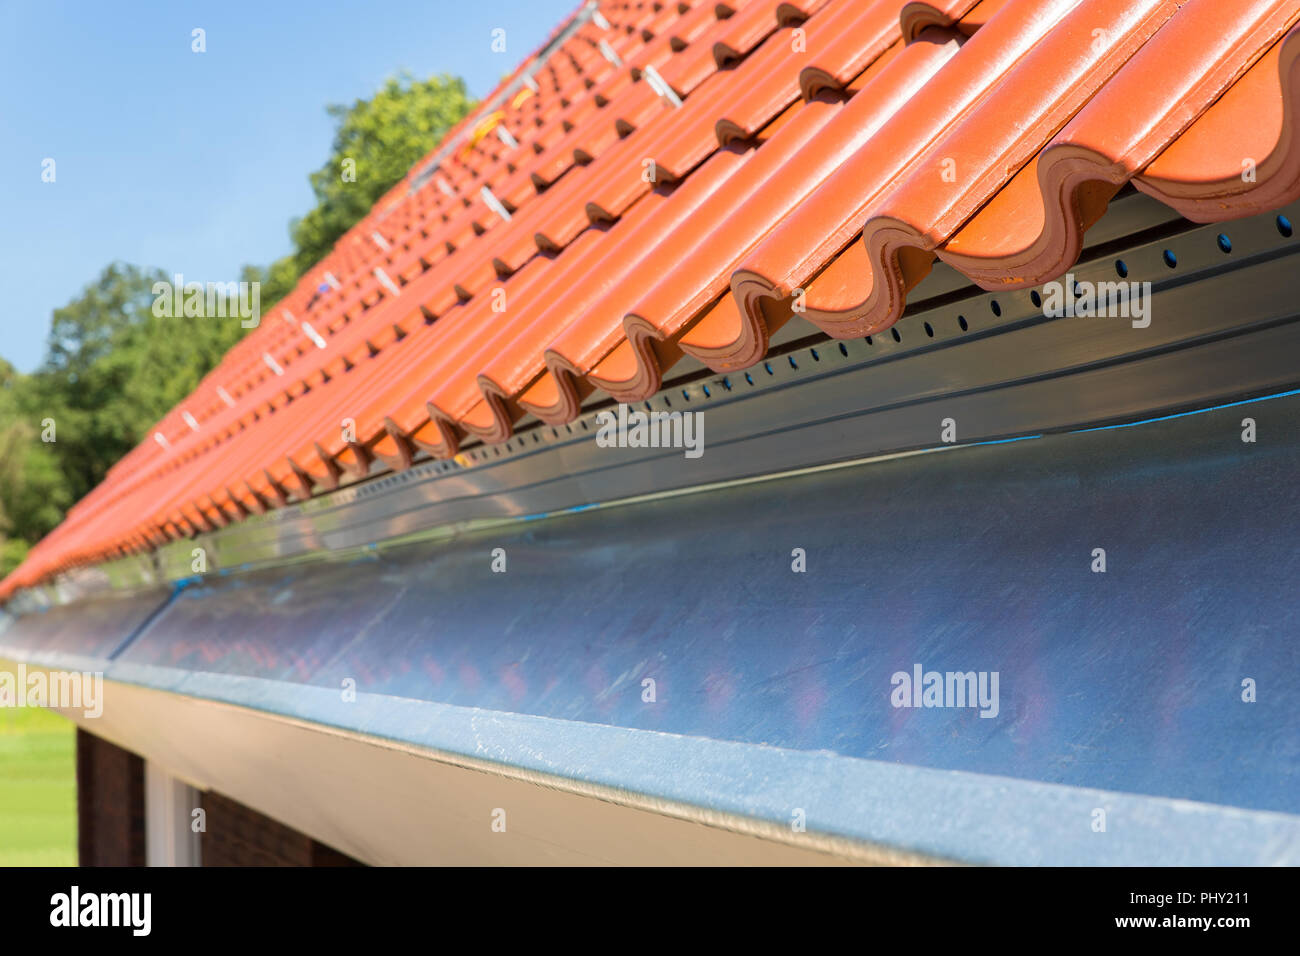 Près de nouvelles tuiles de toit avec gouttière Banque D'Images